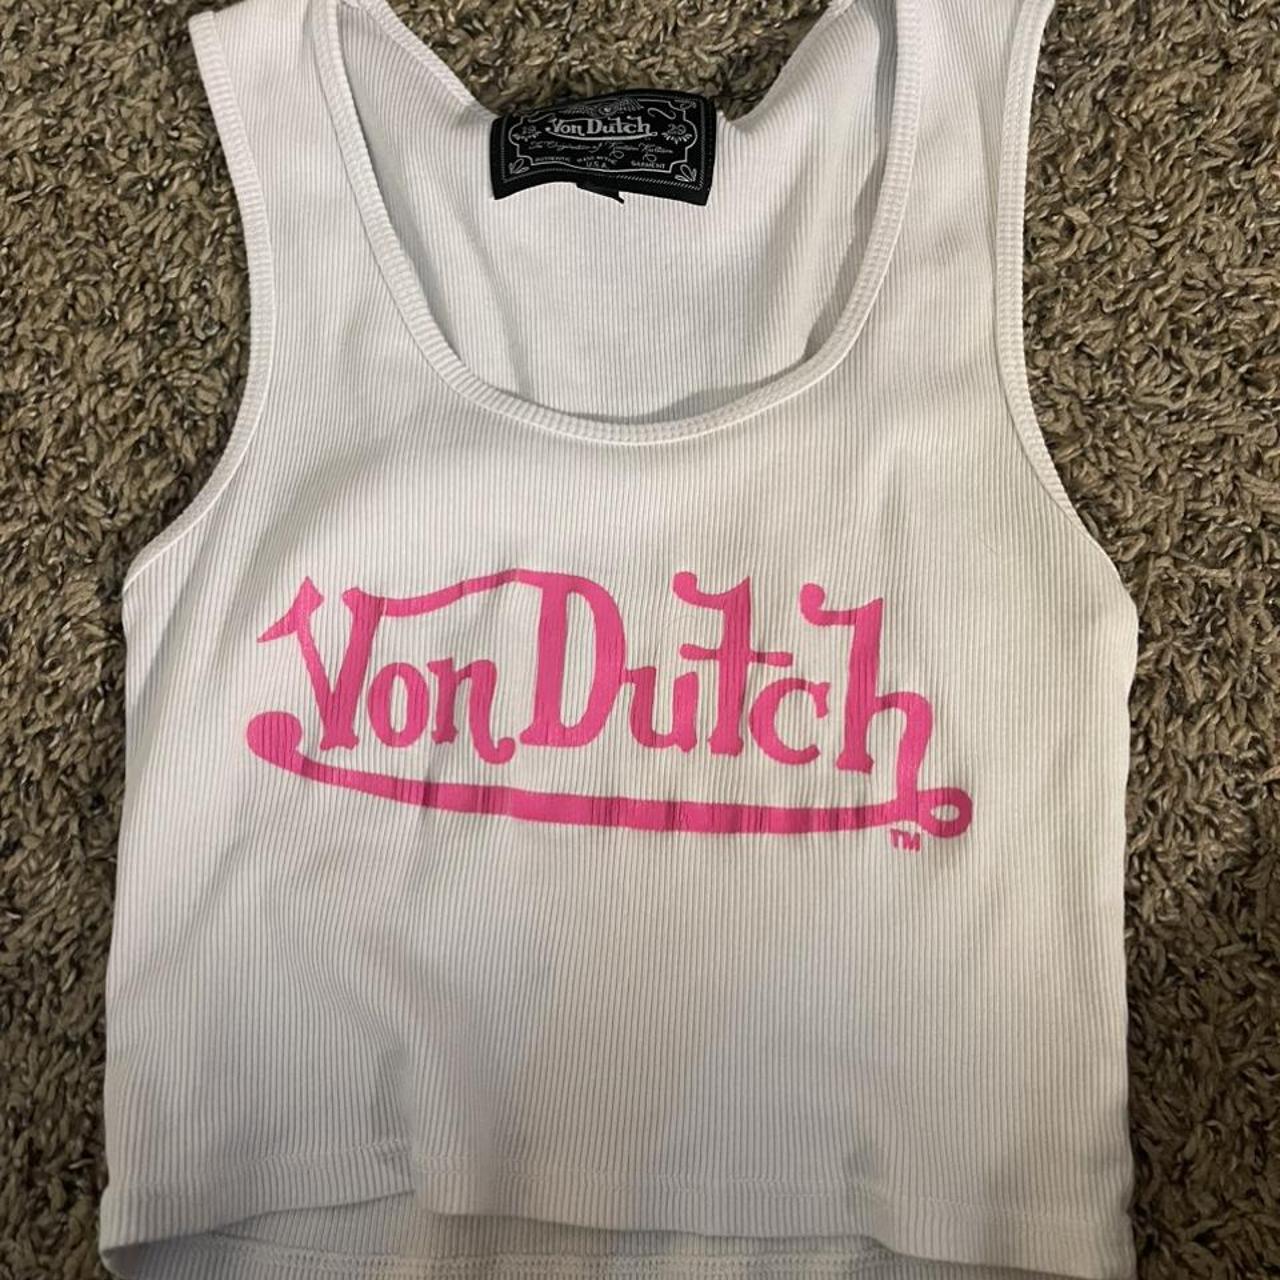 Von Dutch Women's Vests-tanks-camis | Depop